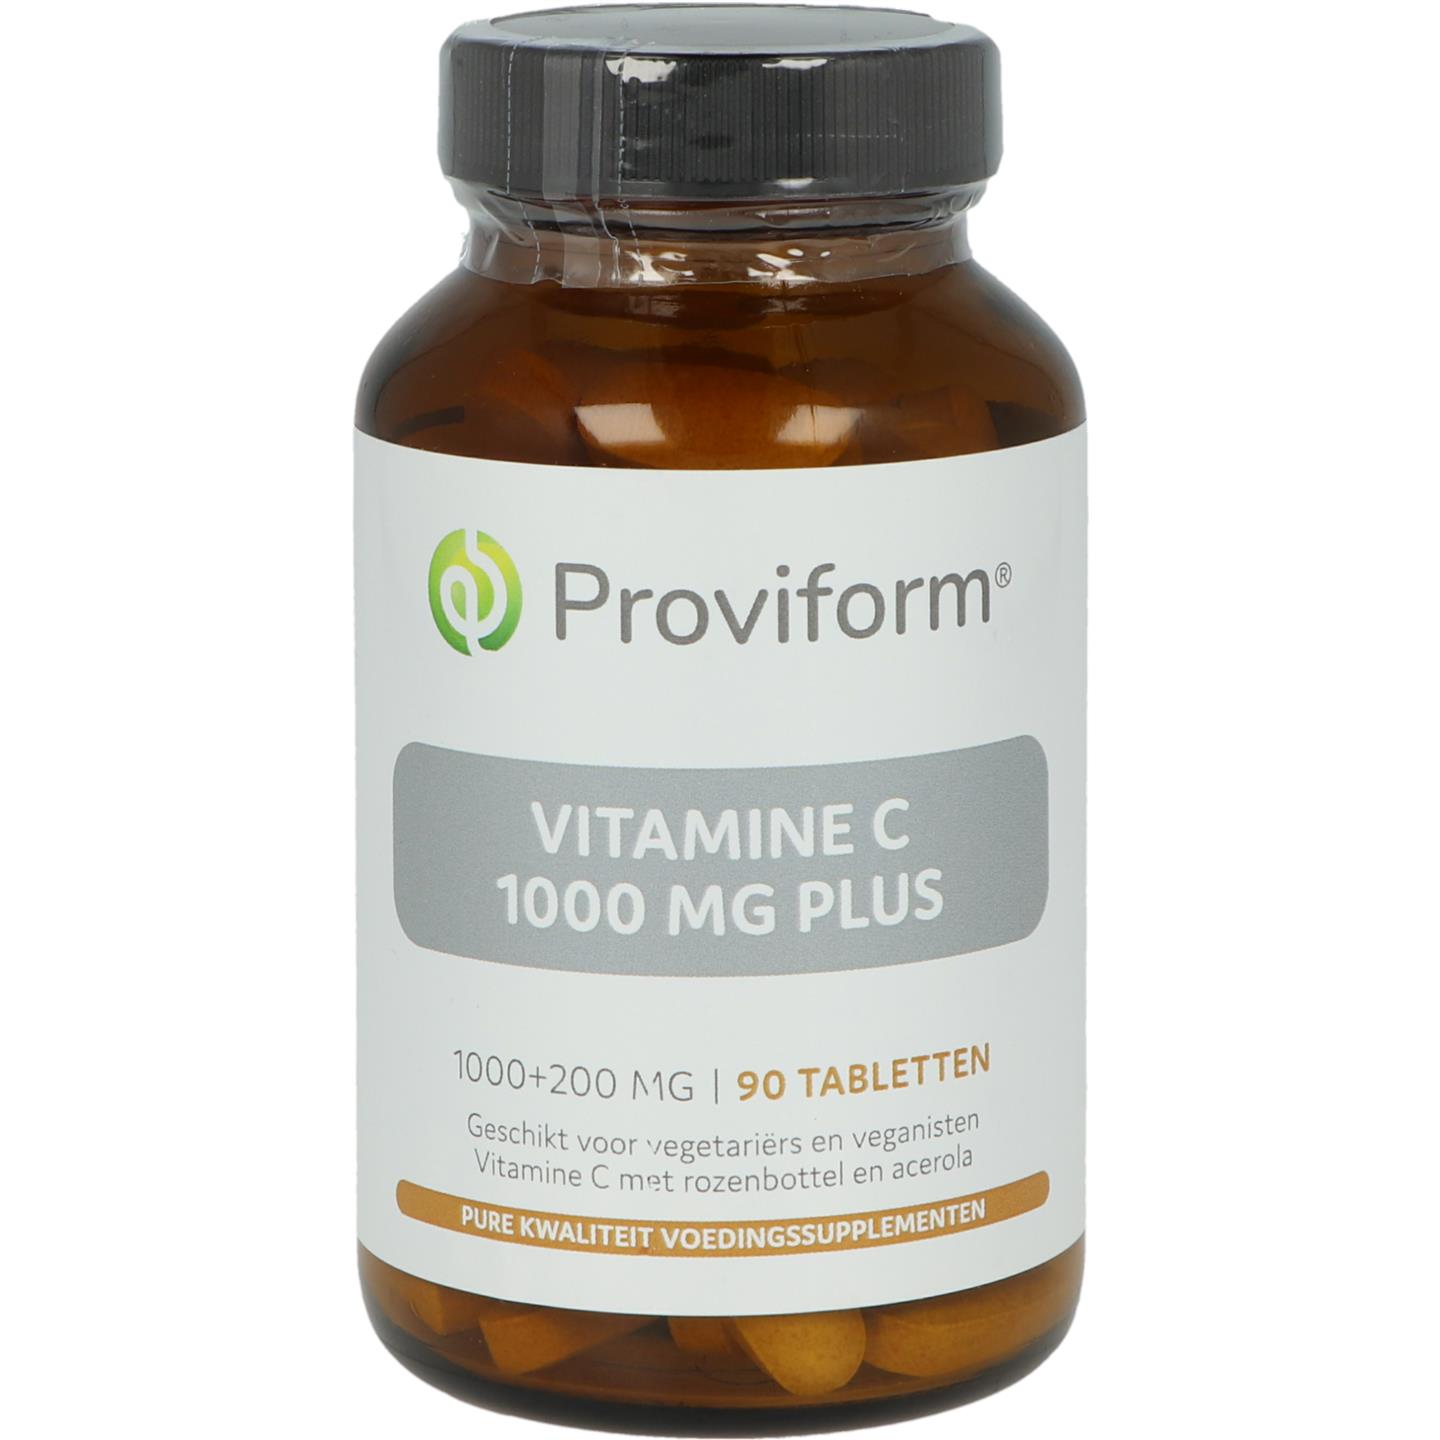 Proviform vitamine c 1000 plus 90tb